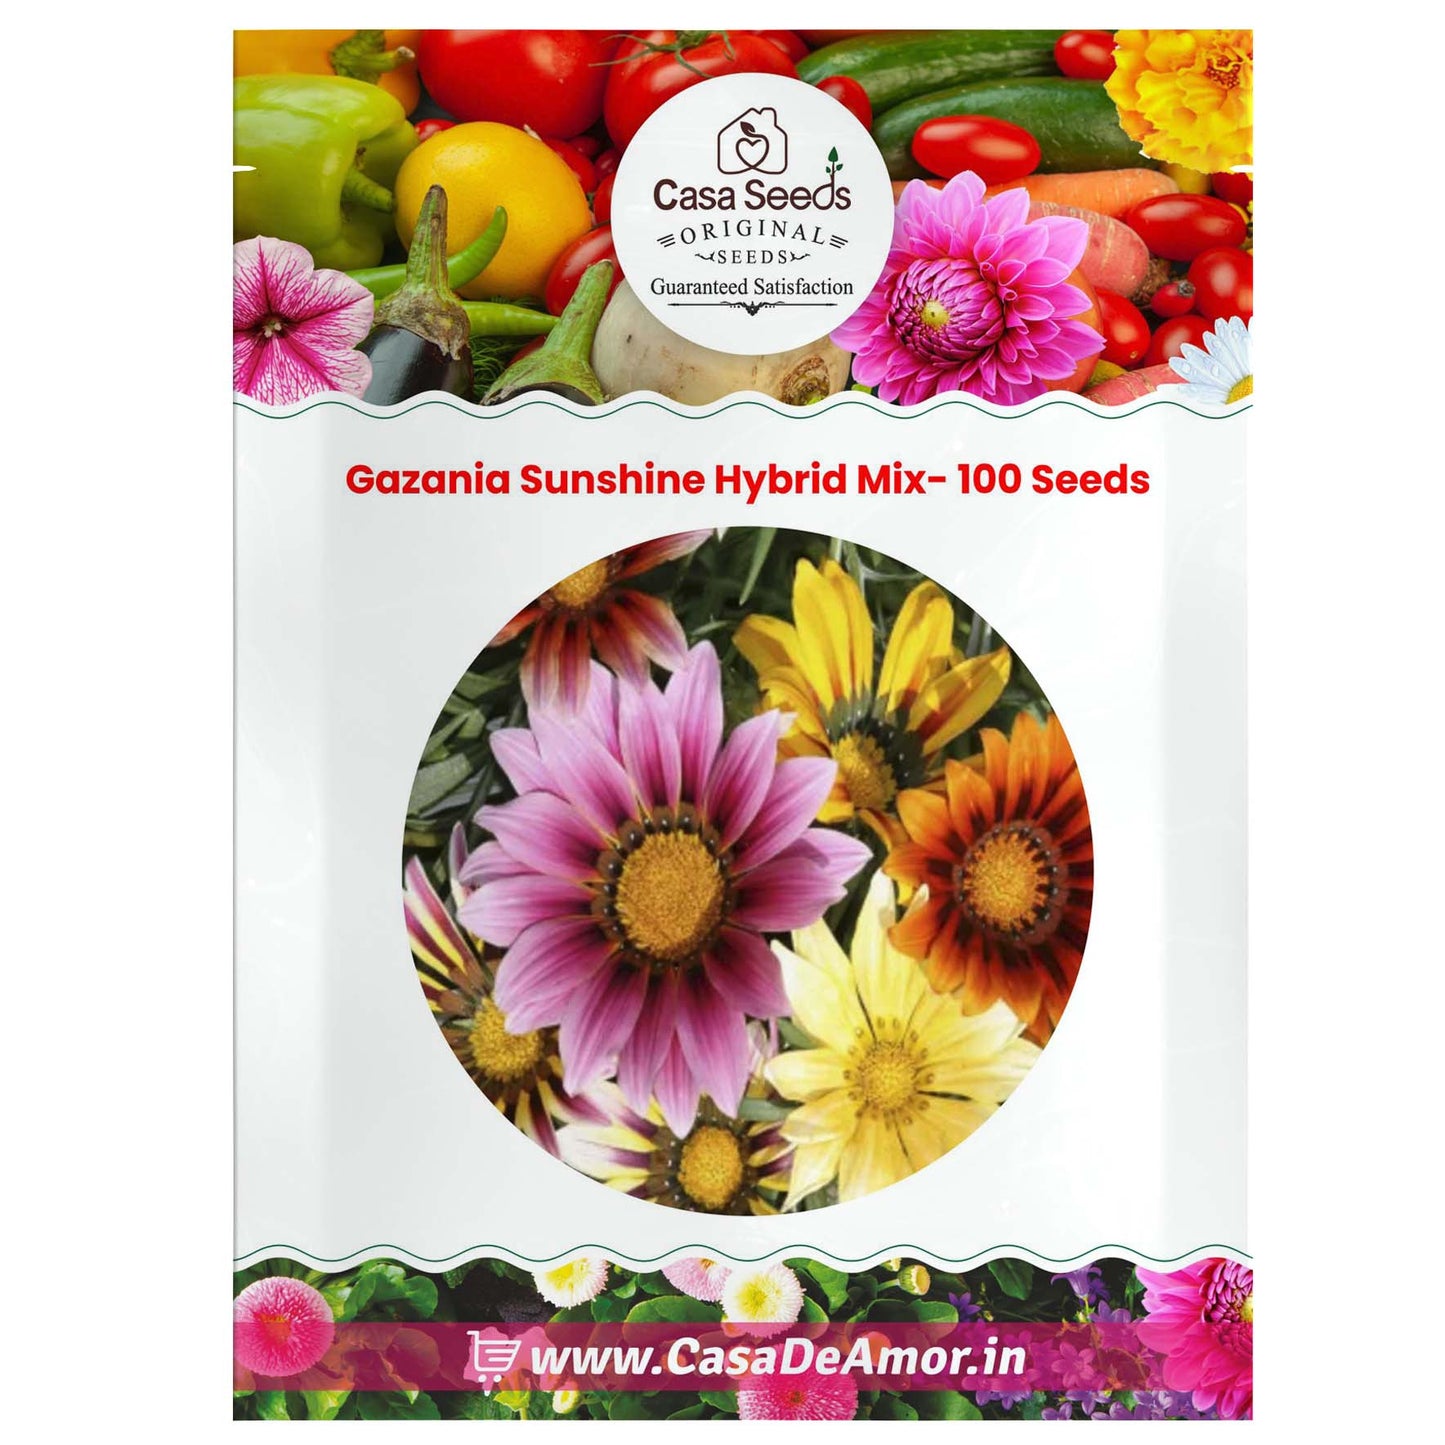 Gazania Sunshine Hybrid Mix- 100 Seeds